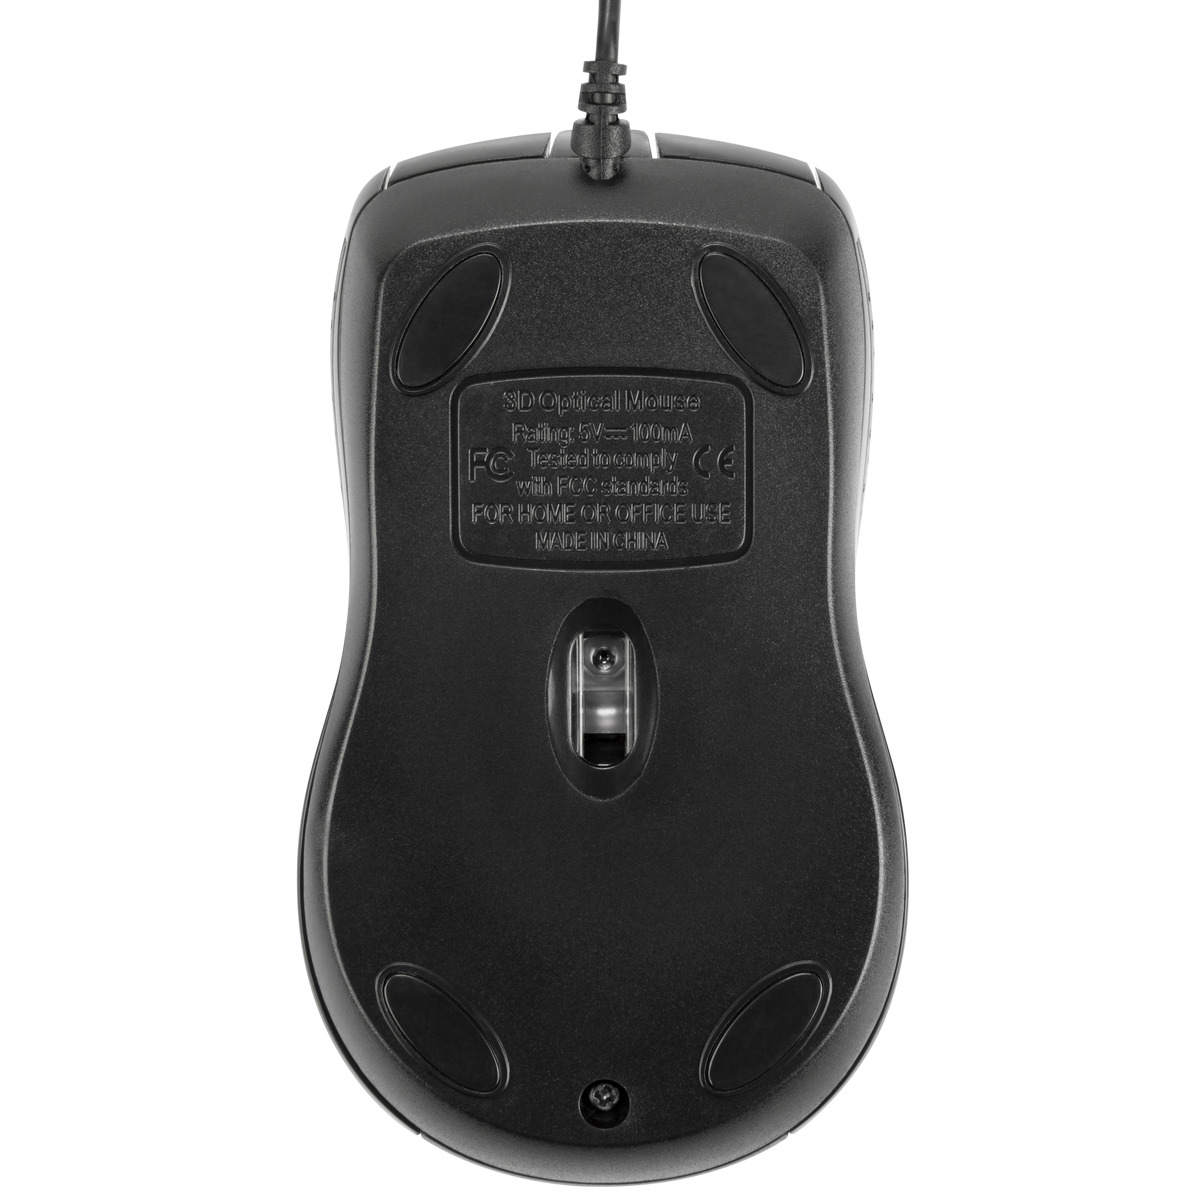 Chuột Targus U660 USB Optical Mouse - Màu Đen- Hãng chính hãng